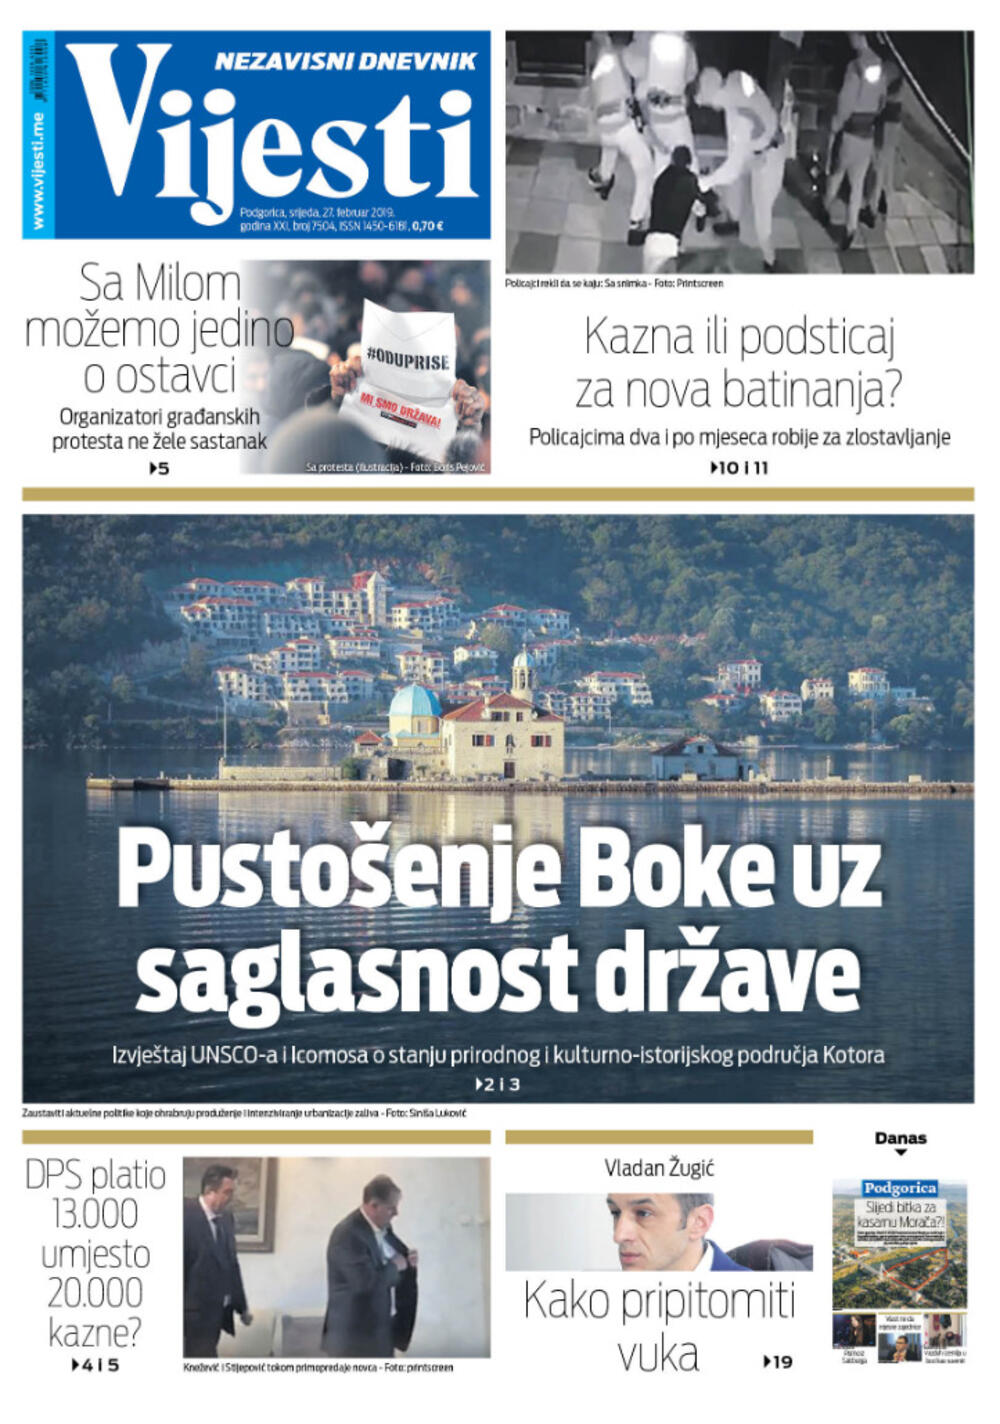 Naslovna strana "Vijesti" za 27. februar